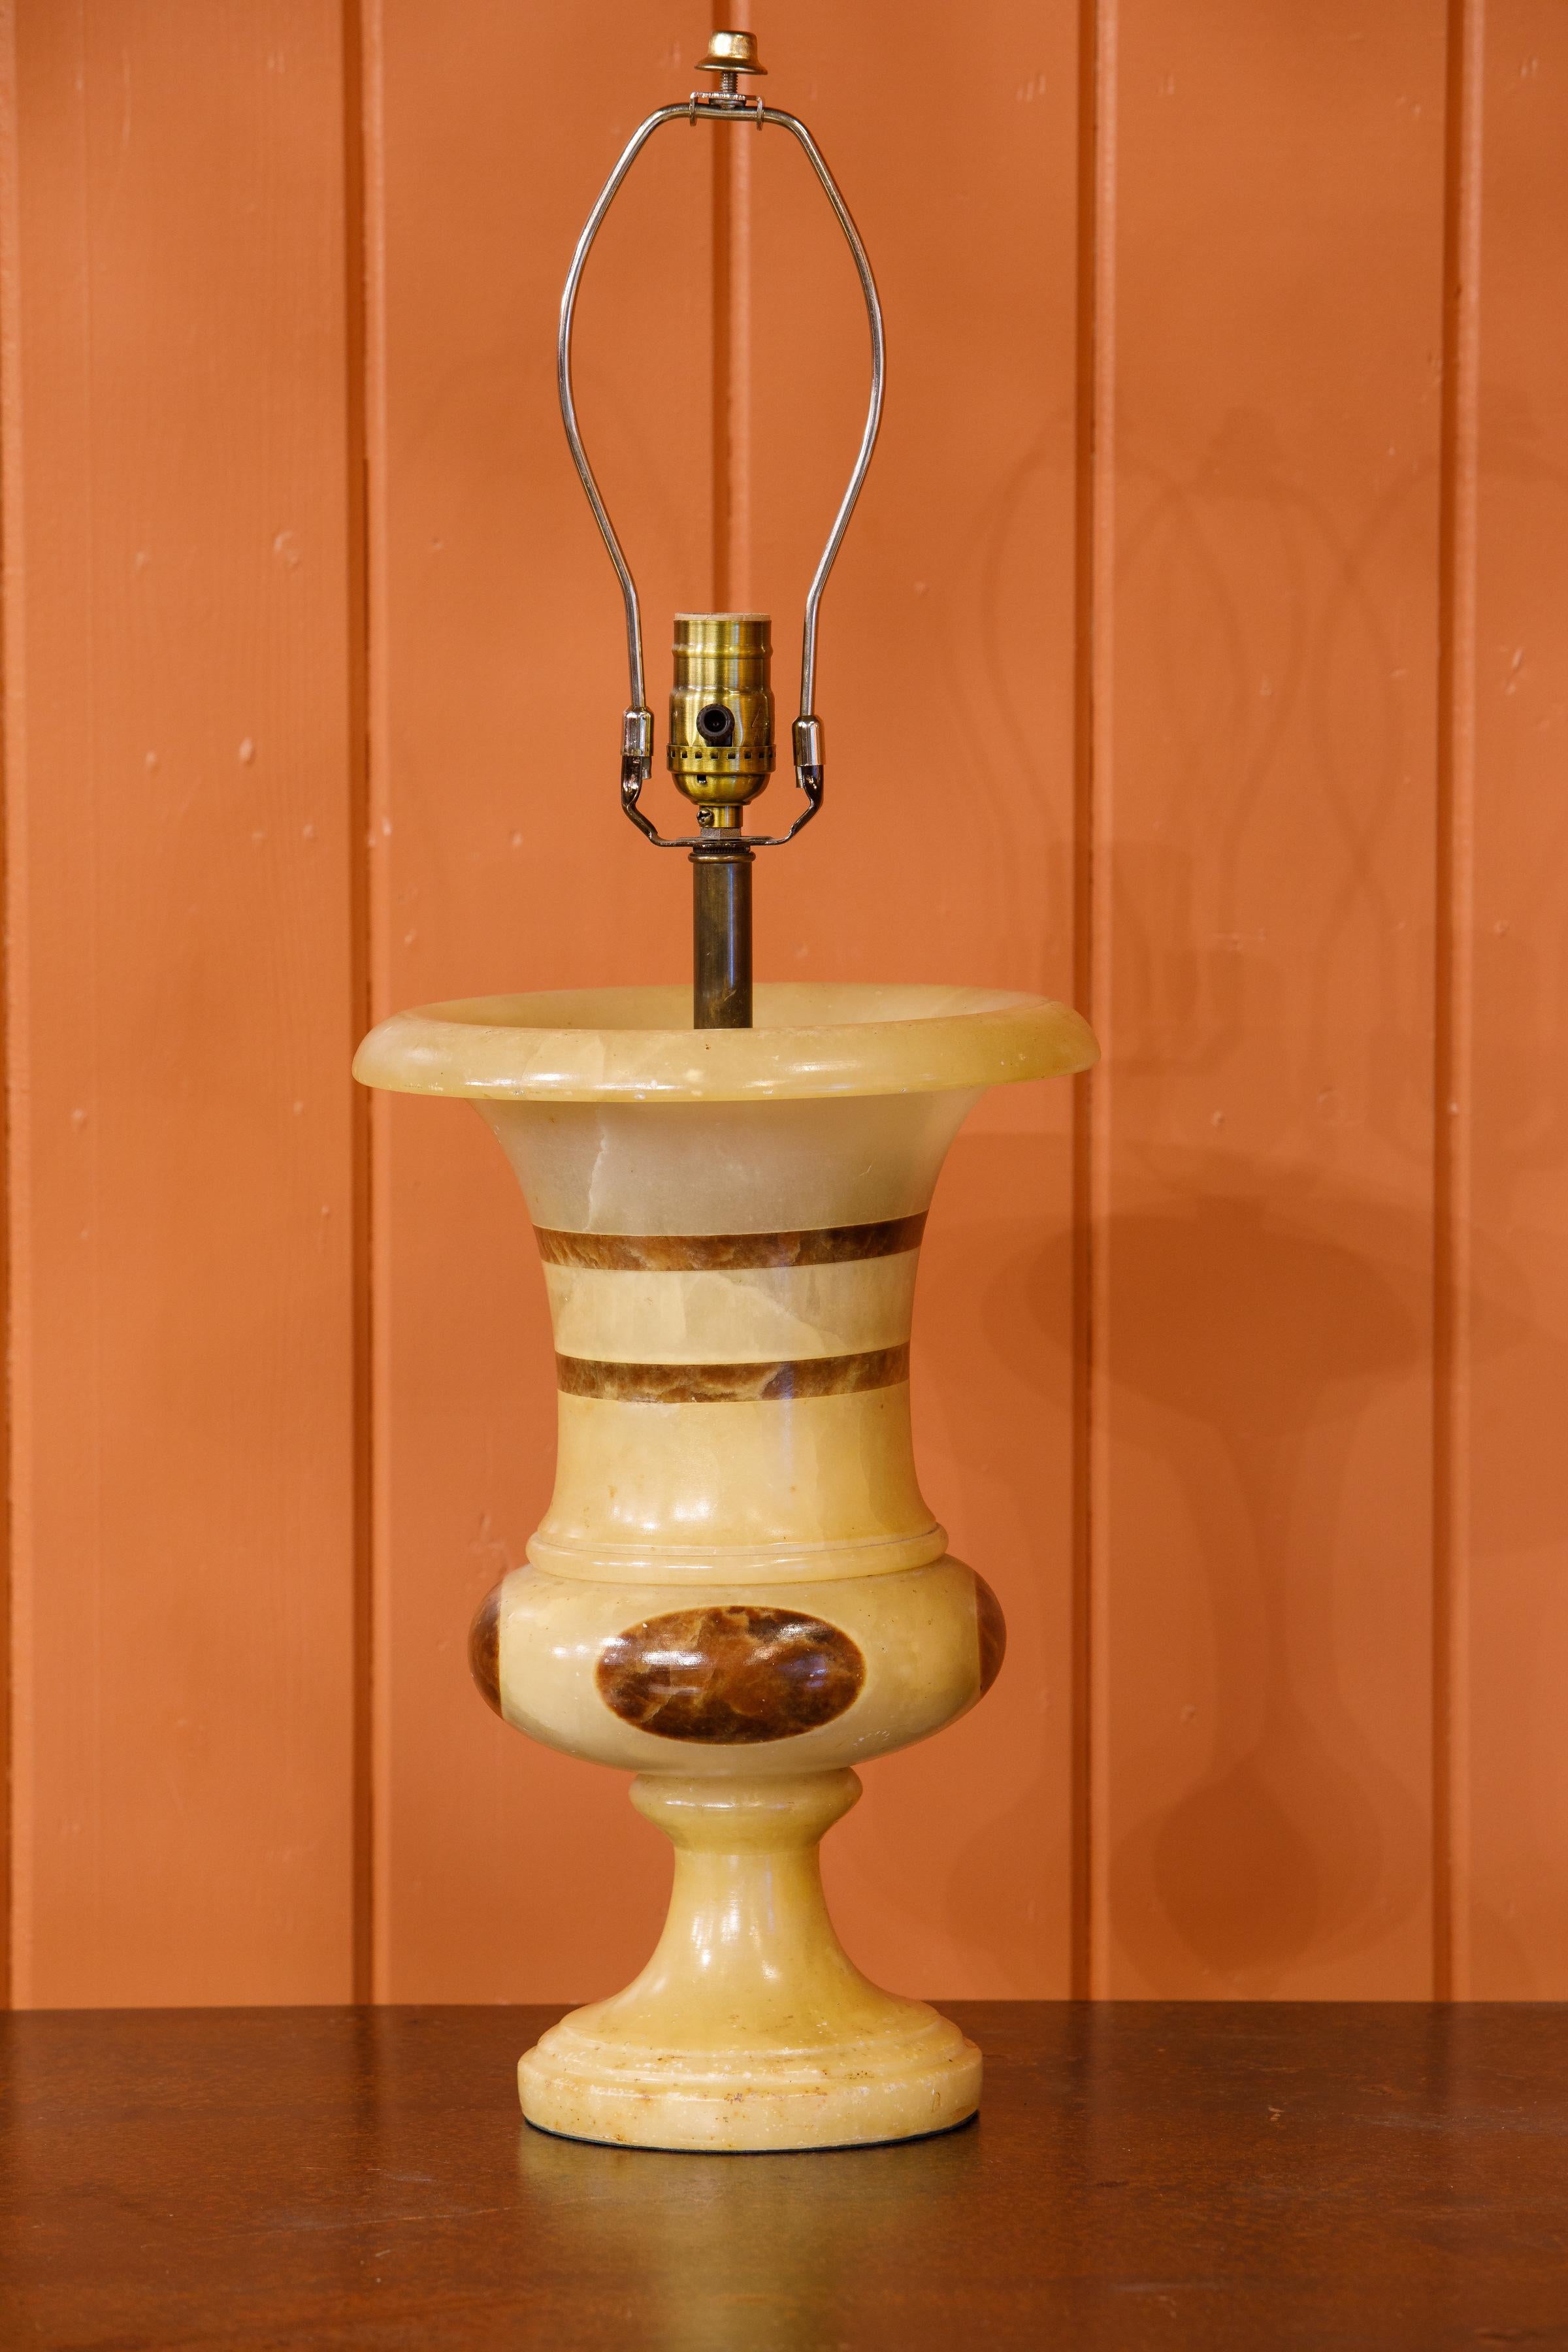 Lampe de table italienne en onyx sculptée à la main avec une intéressante incrustation elliptique brune. La forme classique en balustre mesure dix pouces au bord et six pouces à la base. Mélange intéressant de forme classique et de sensibilité